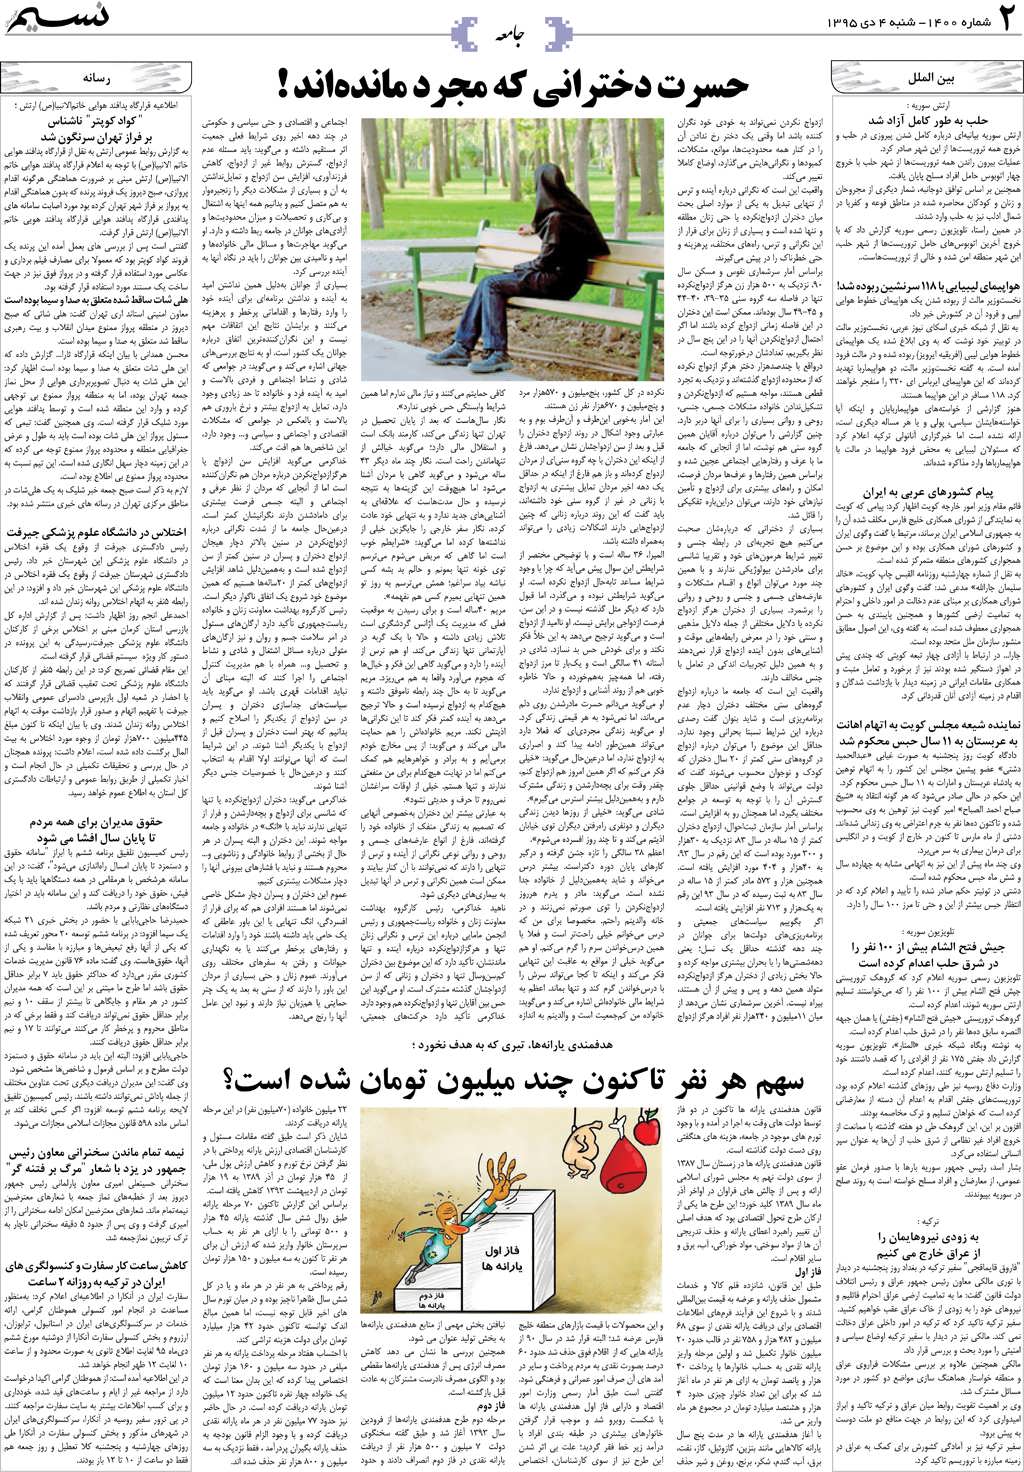 صفحه جامعه روزنامه نسیم شماره 1400